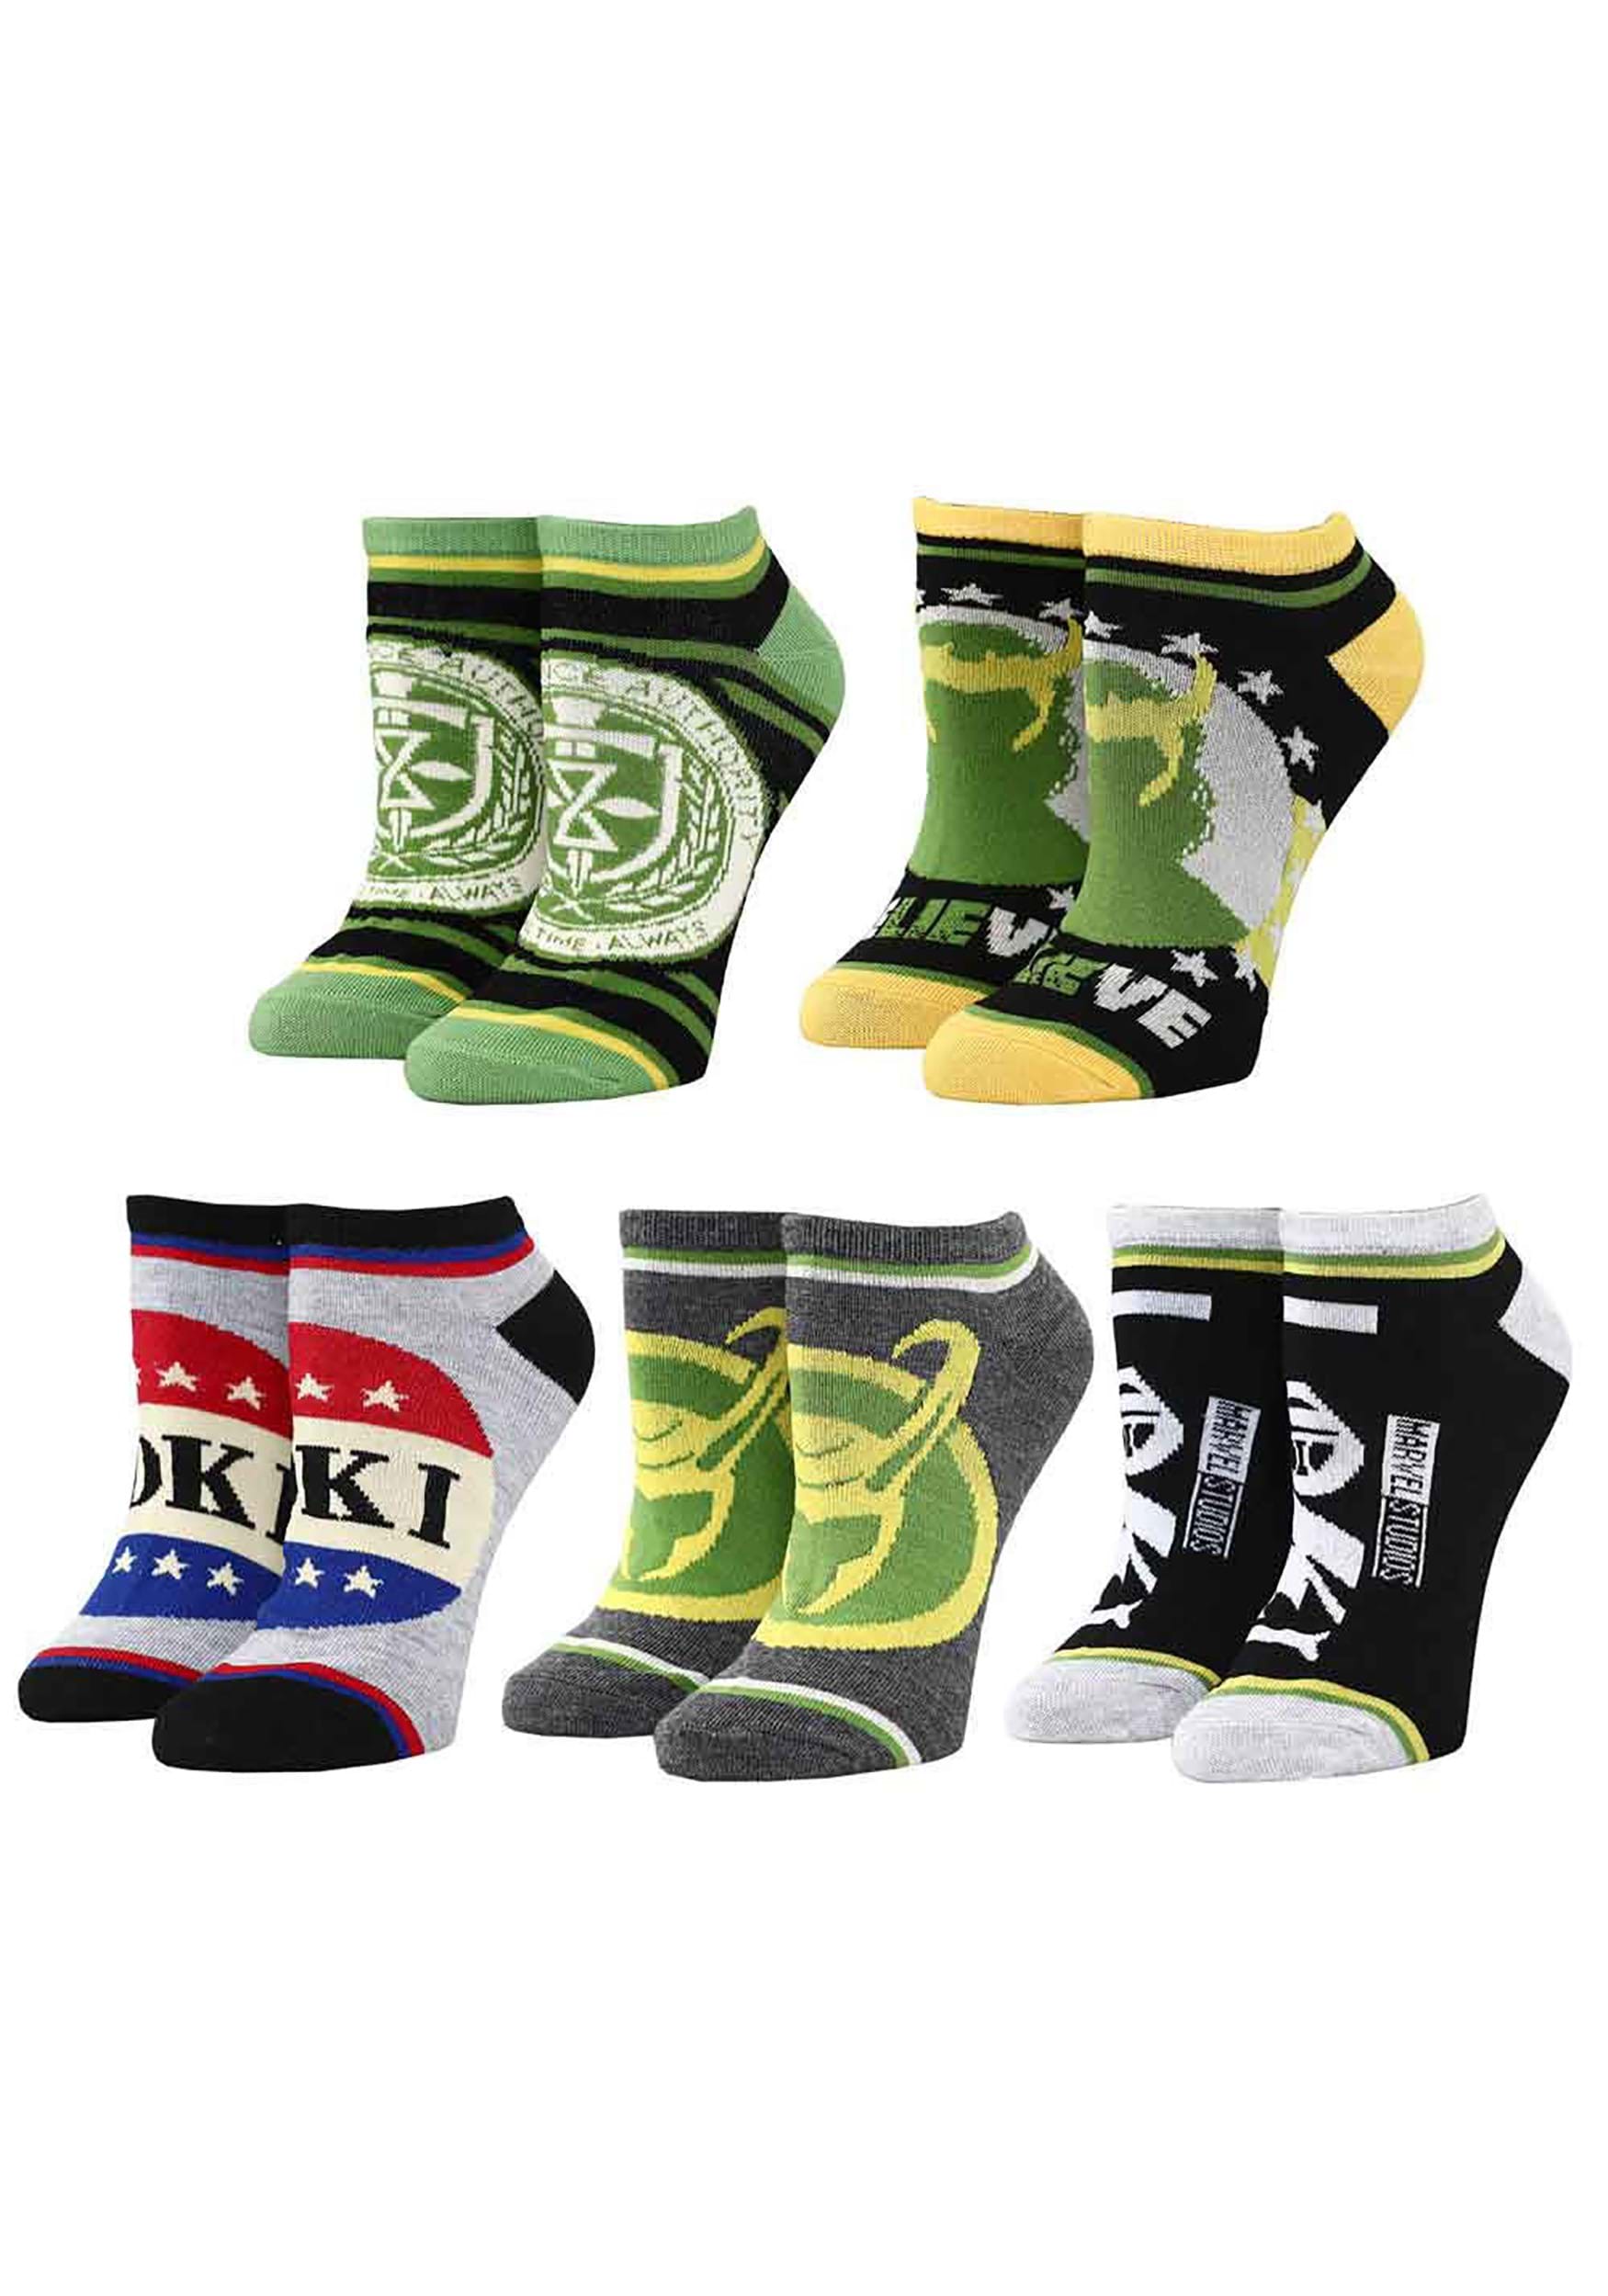 Marvel Loki Campaign 5 Pack Ankle Socks